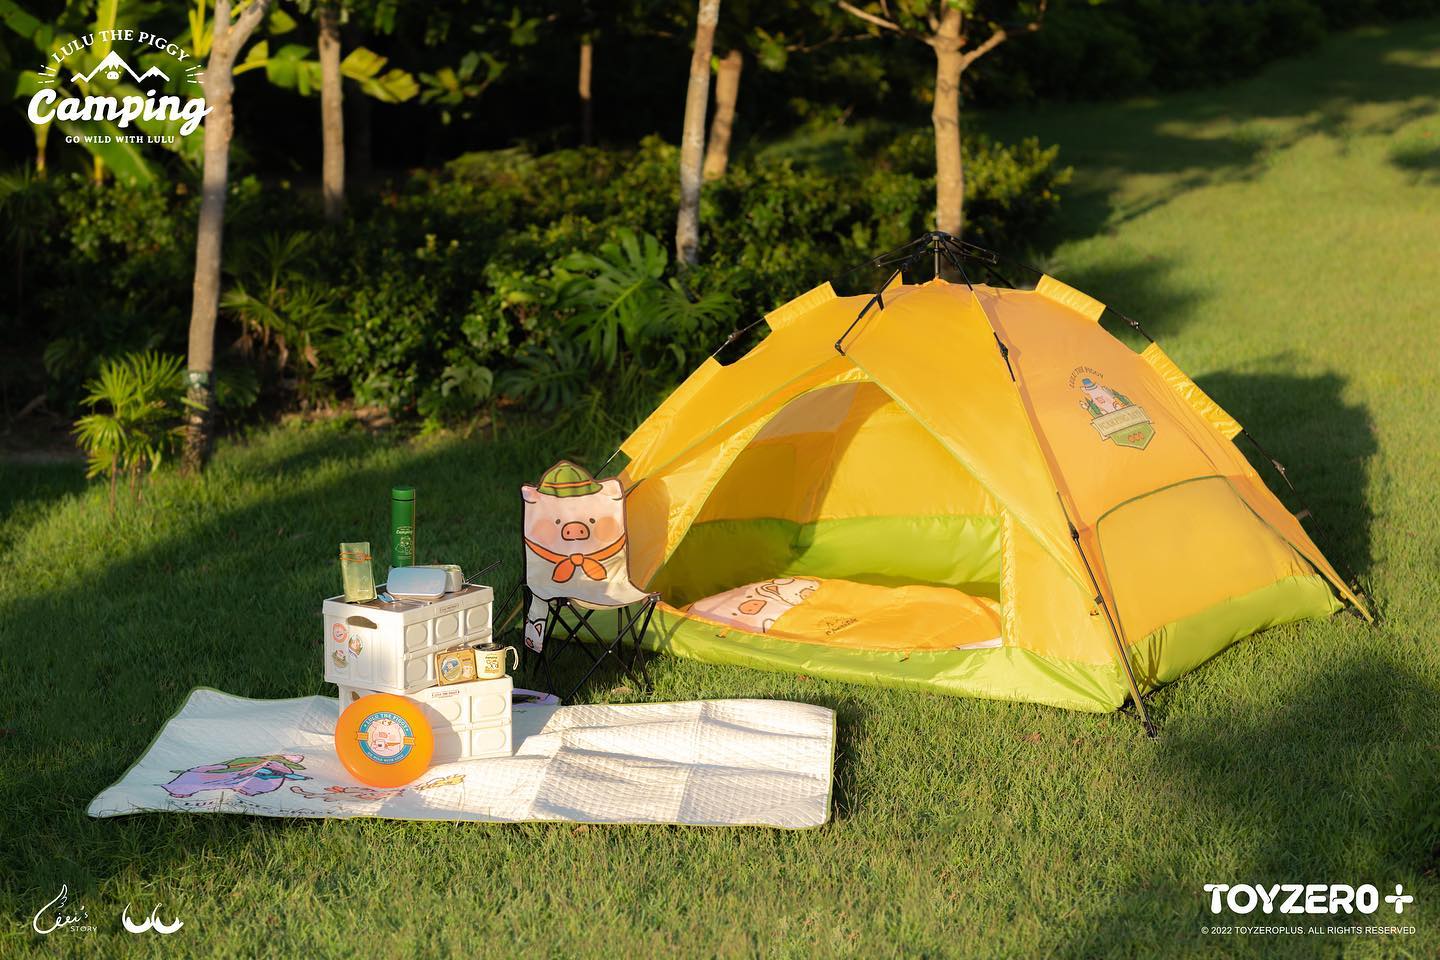 LuLu the Piggy Camping _ Tent